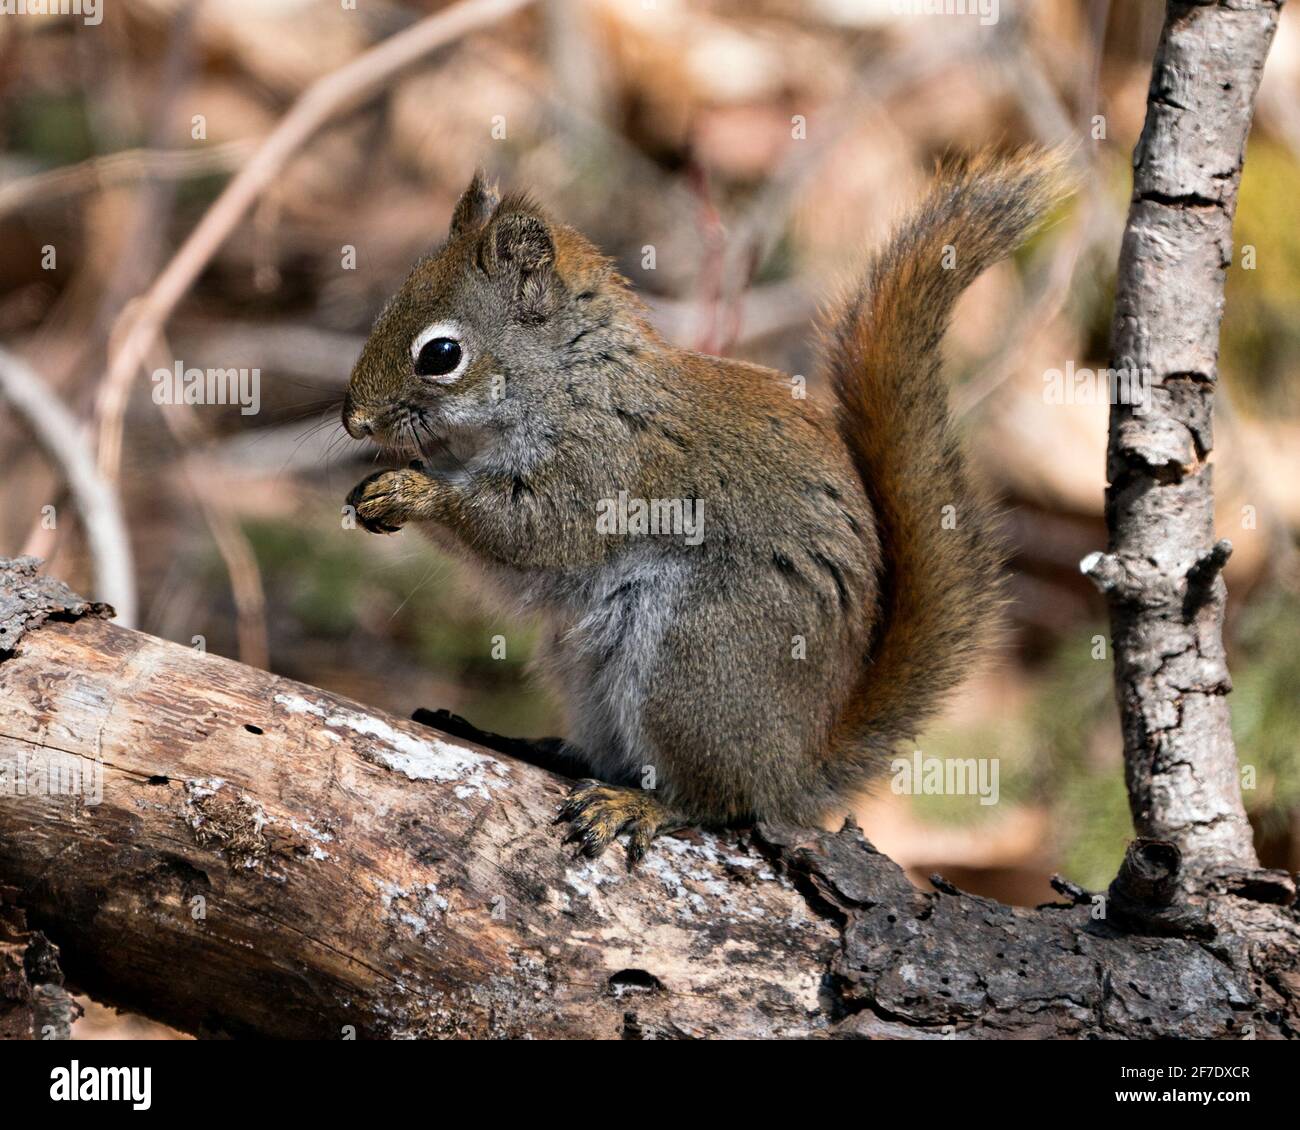 Nahaufnahme des Eichhörnchen-Profils, das auf einem Baumzweig im Wald sitzt und buschigen Schwanz, braunes Fell, Nase, Augen, Pfoten mit unscharfem Hintergrund zeigt. Stockfoto